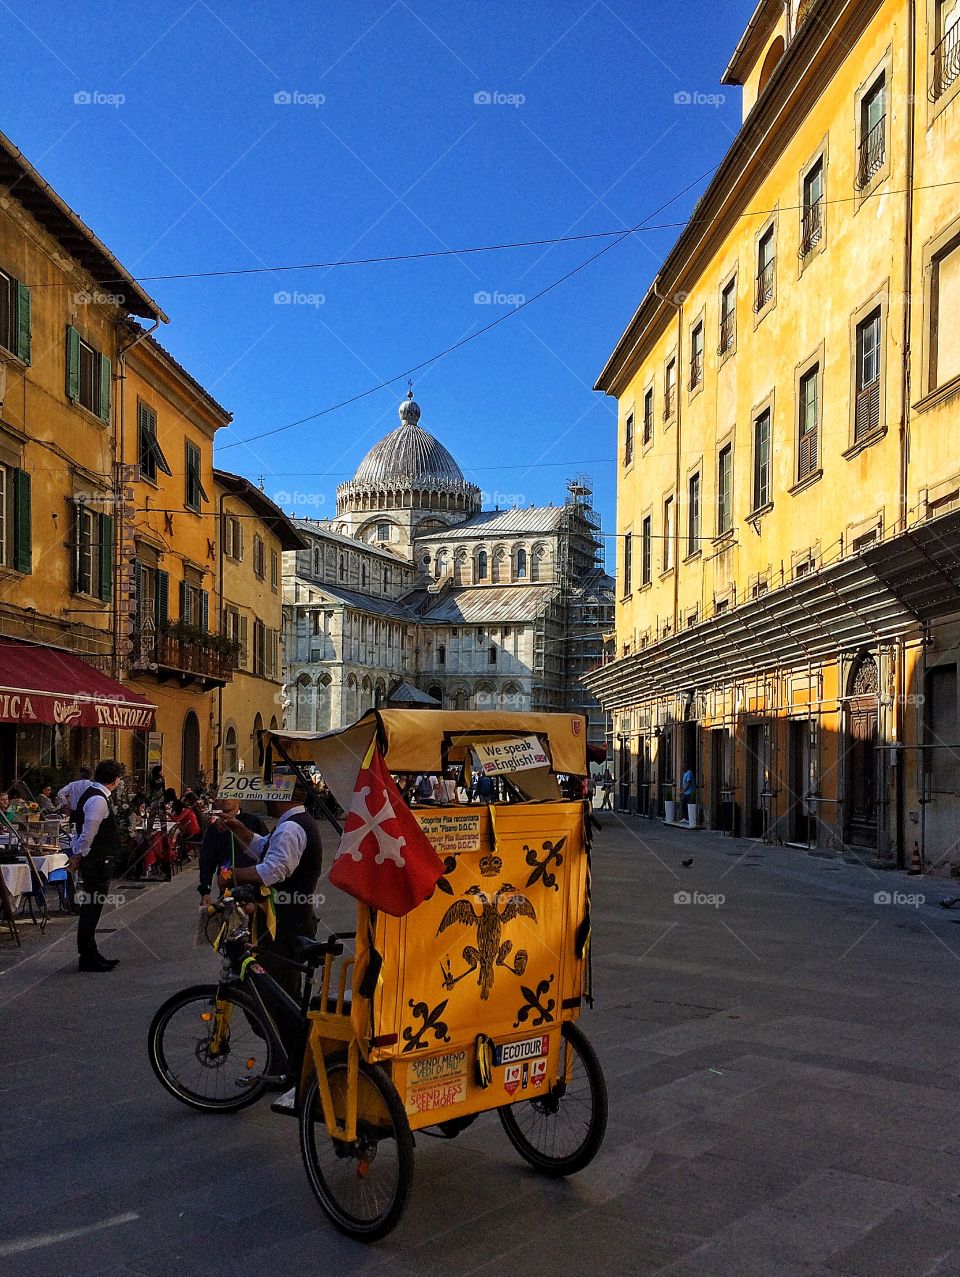 Biking along in Pisa